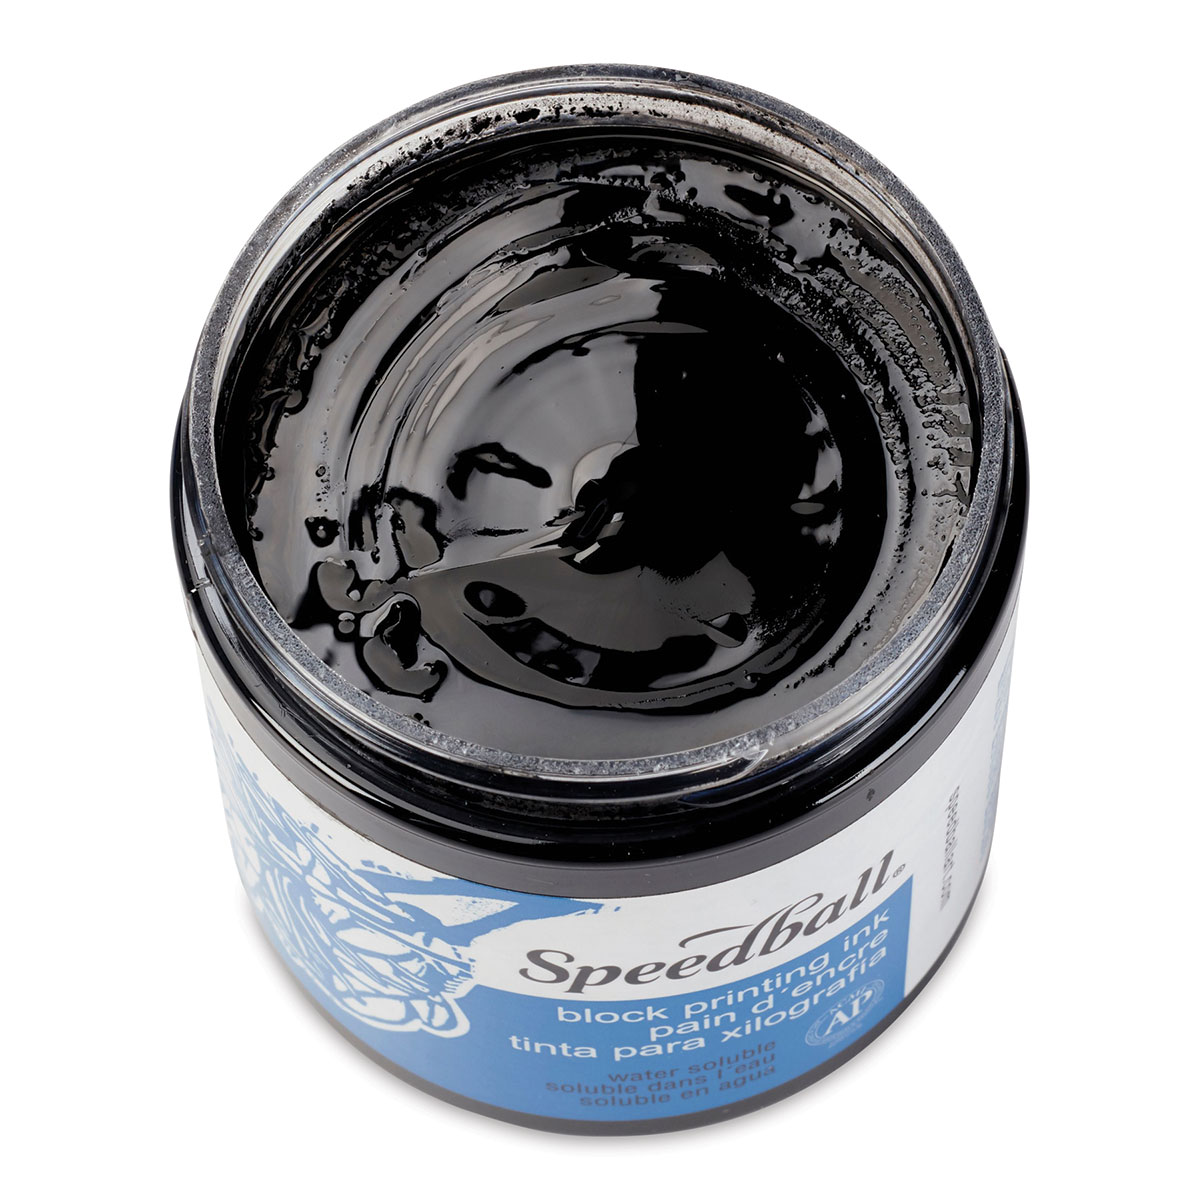 Speedball Water-Based Block Printing Ink - Black, 8 oz